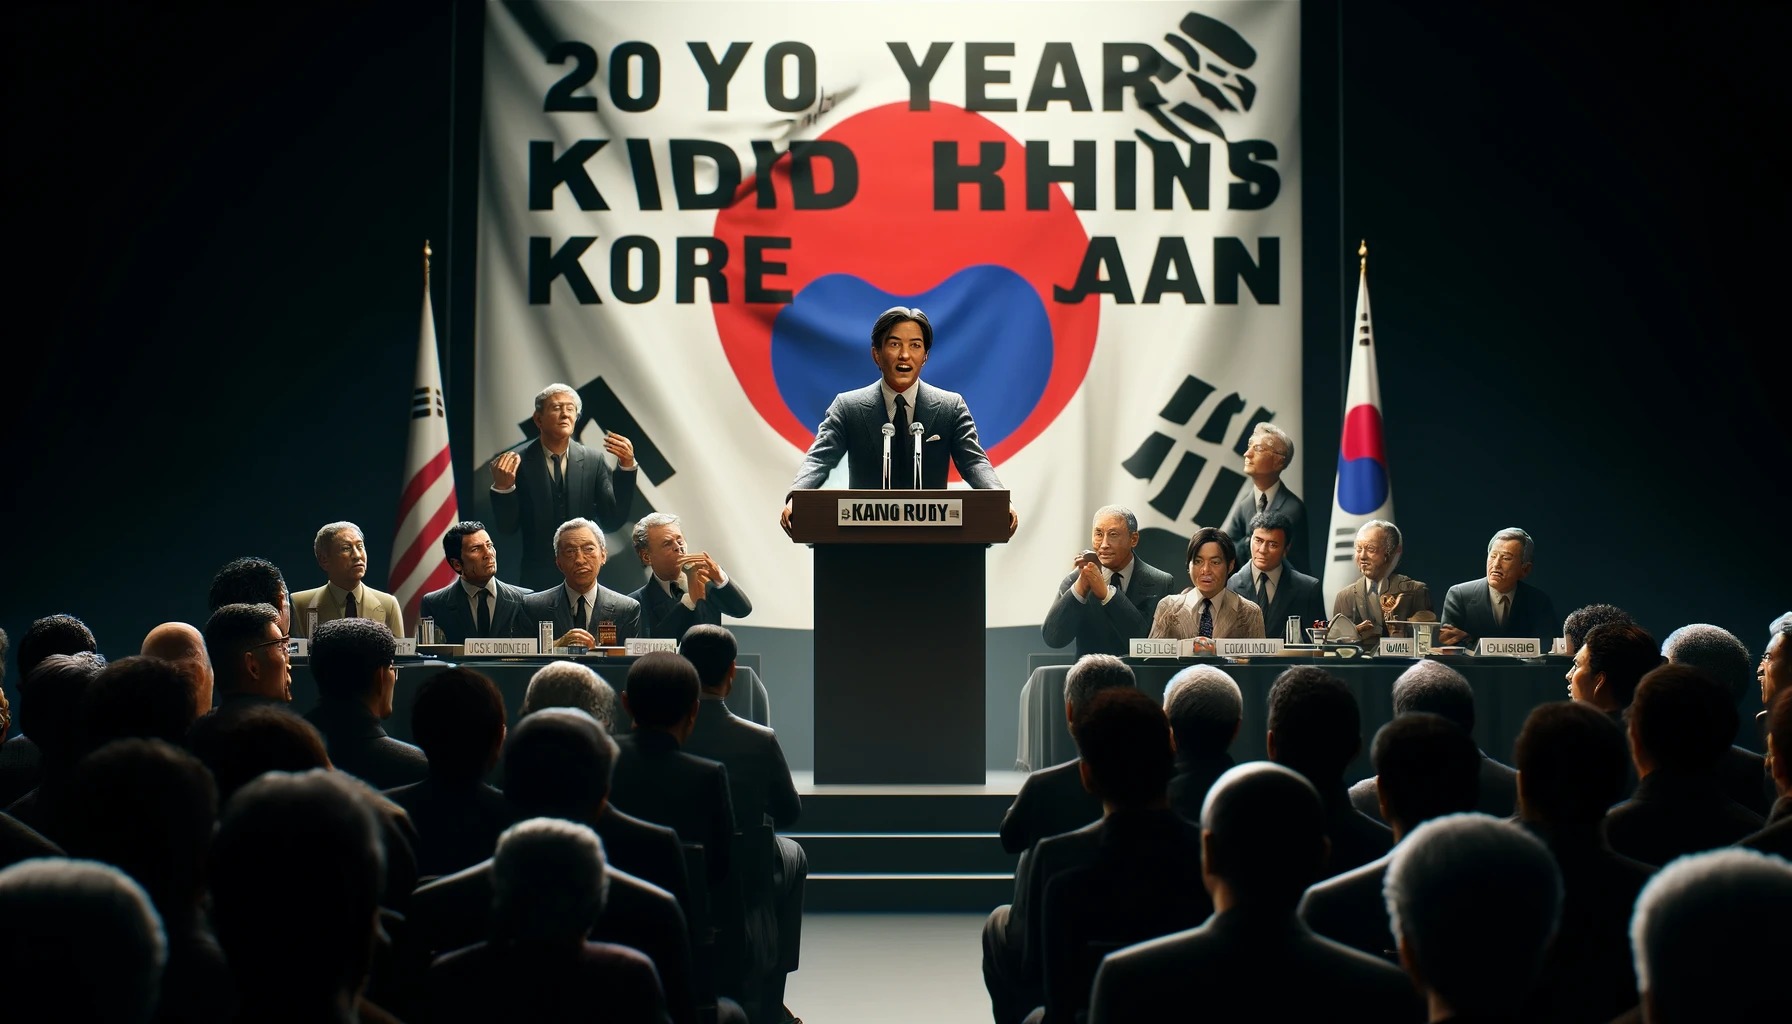 【悲報】売れっ子日本人俳優「韓国に20年差をつけられてます」